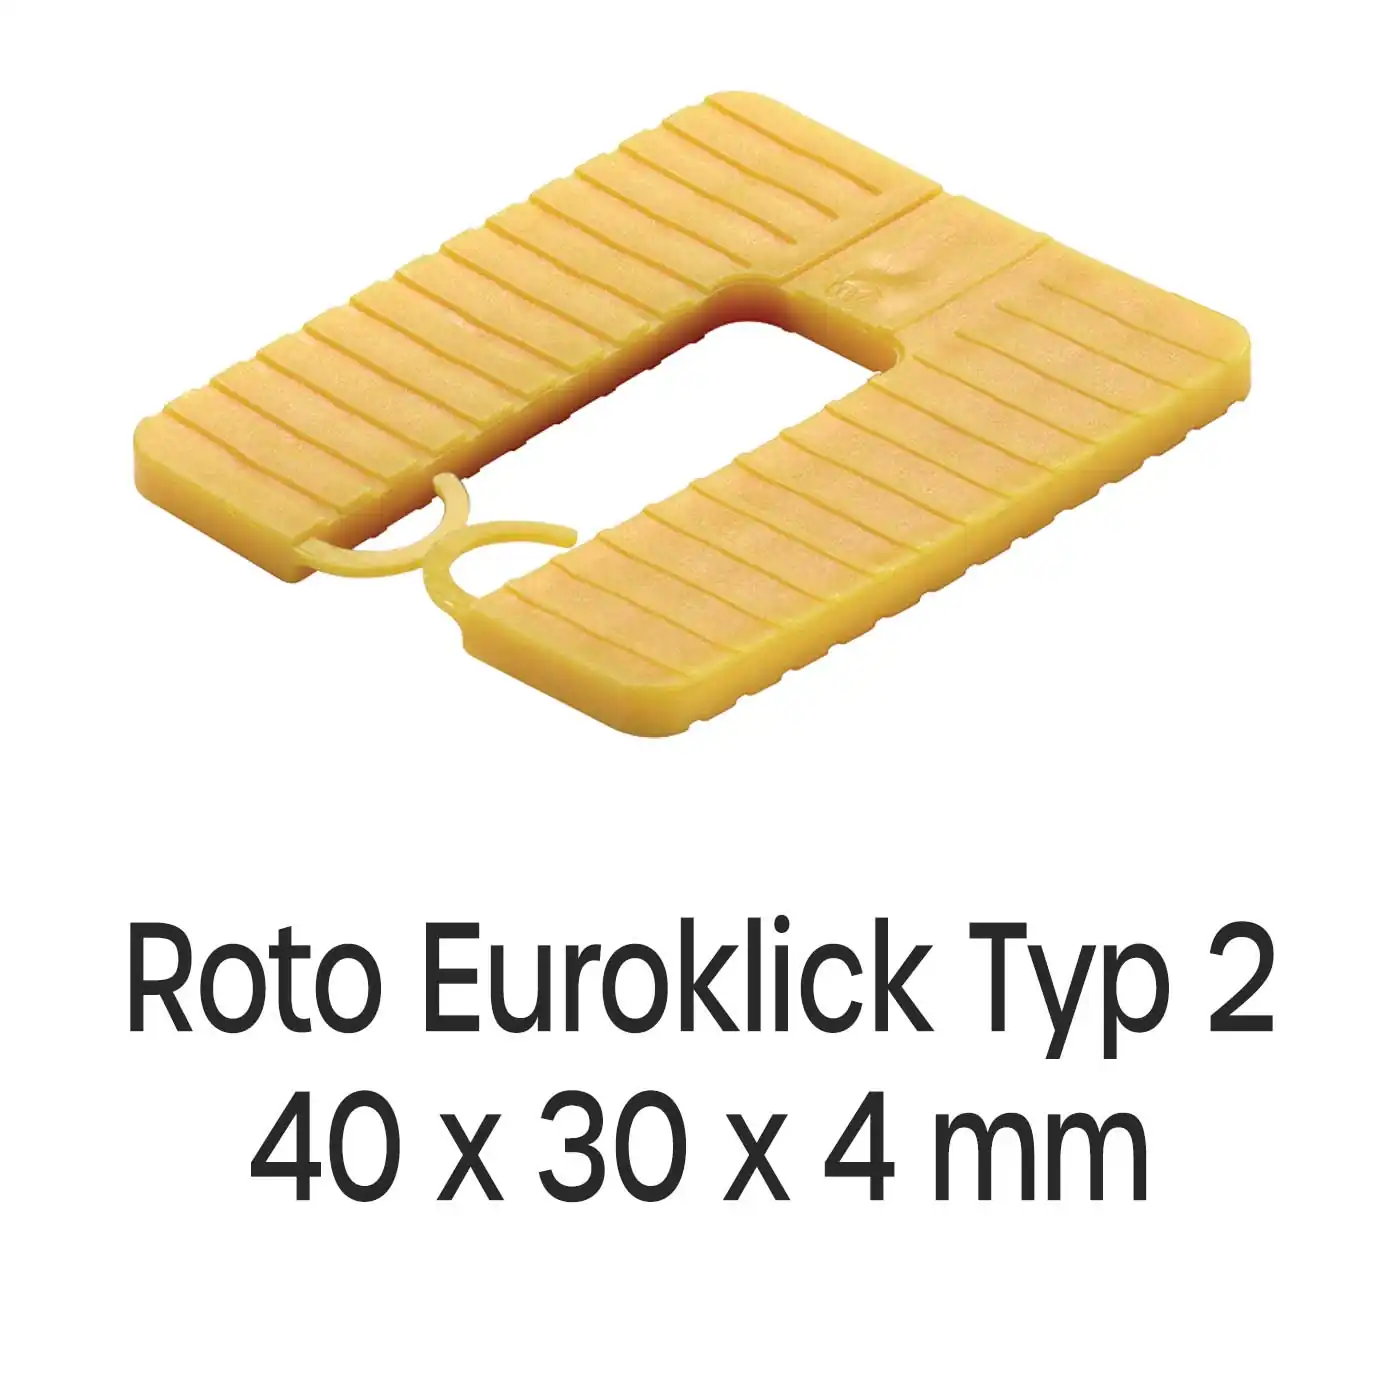 Distanzplatten Roto Euroklick Typ 2 40 x 30 x 4 mm 1000 Stück